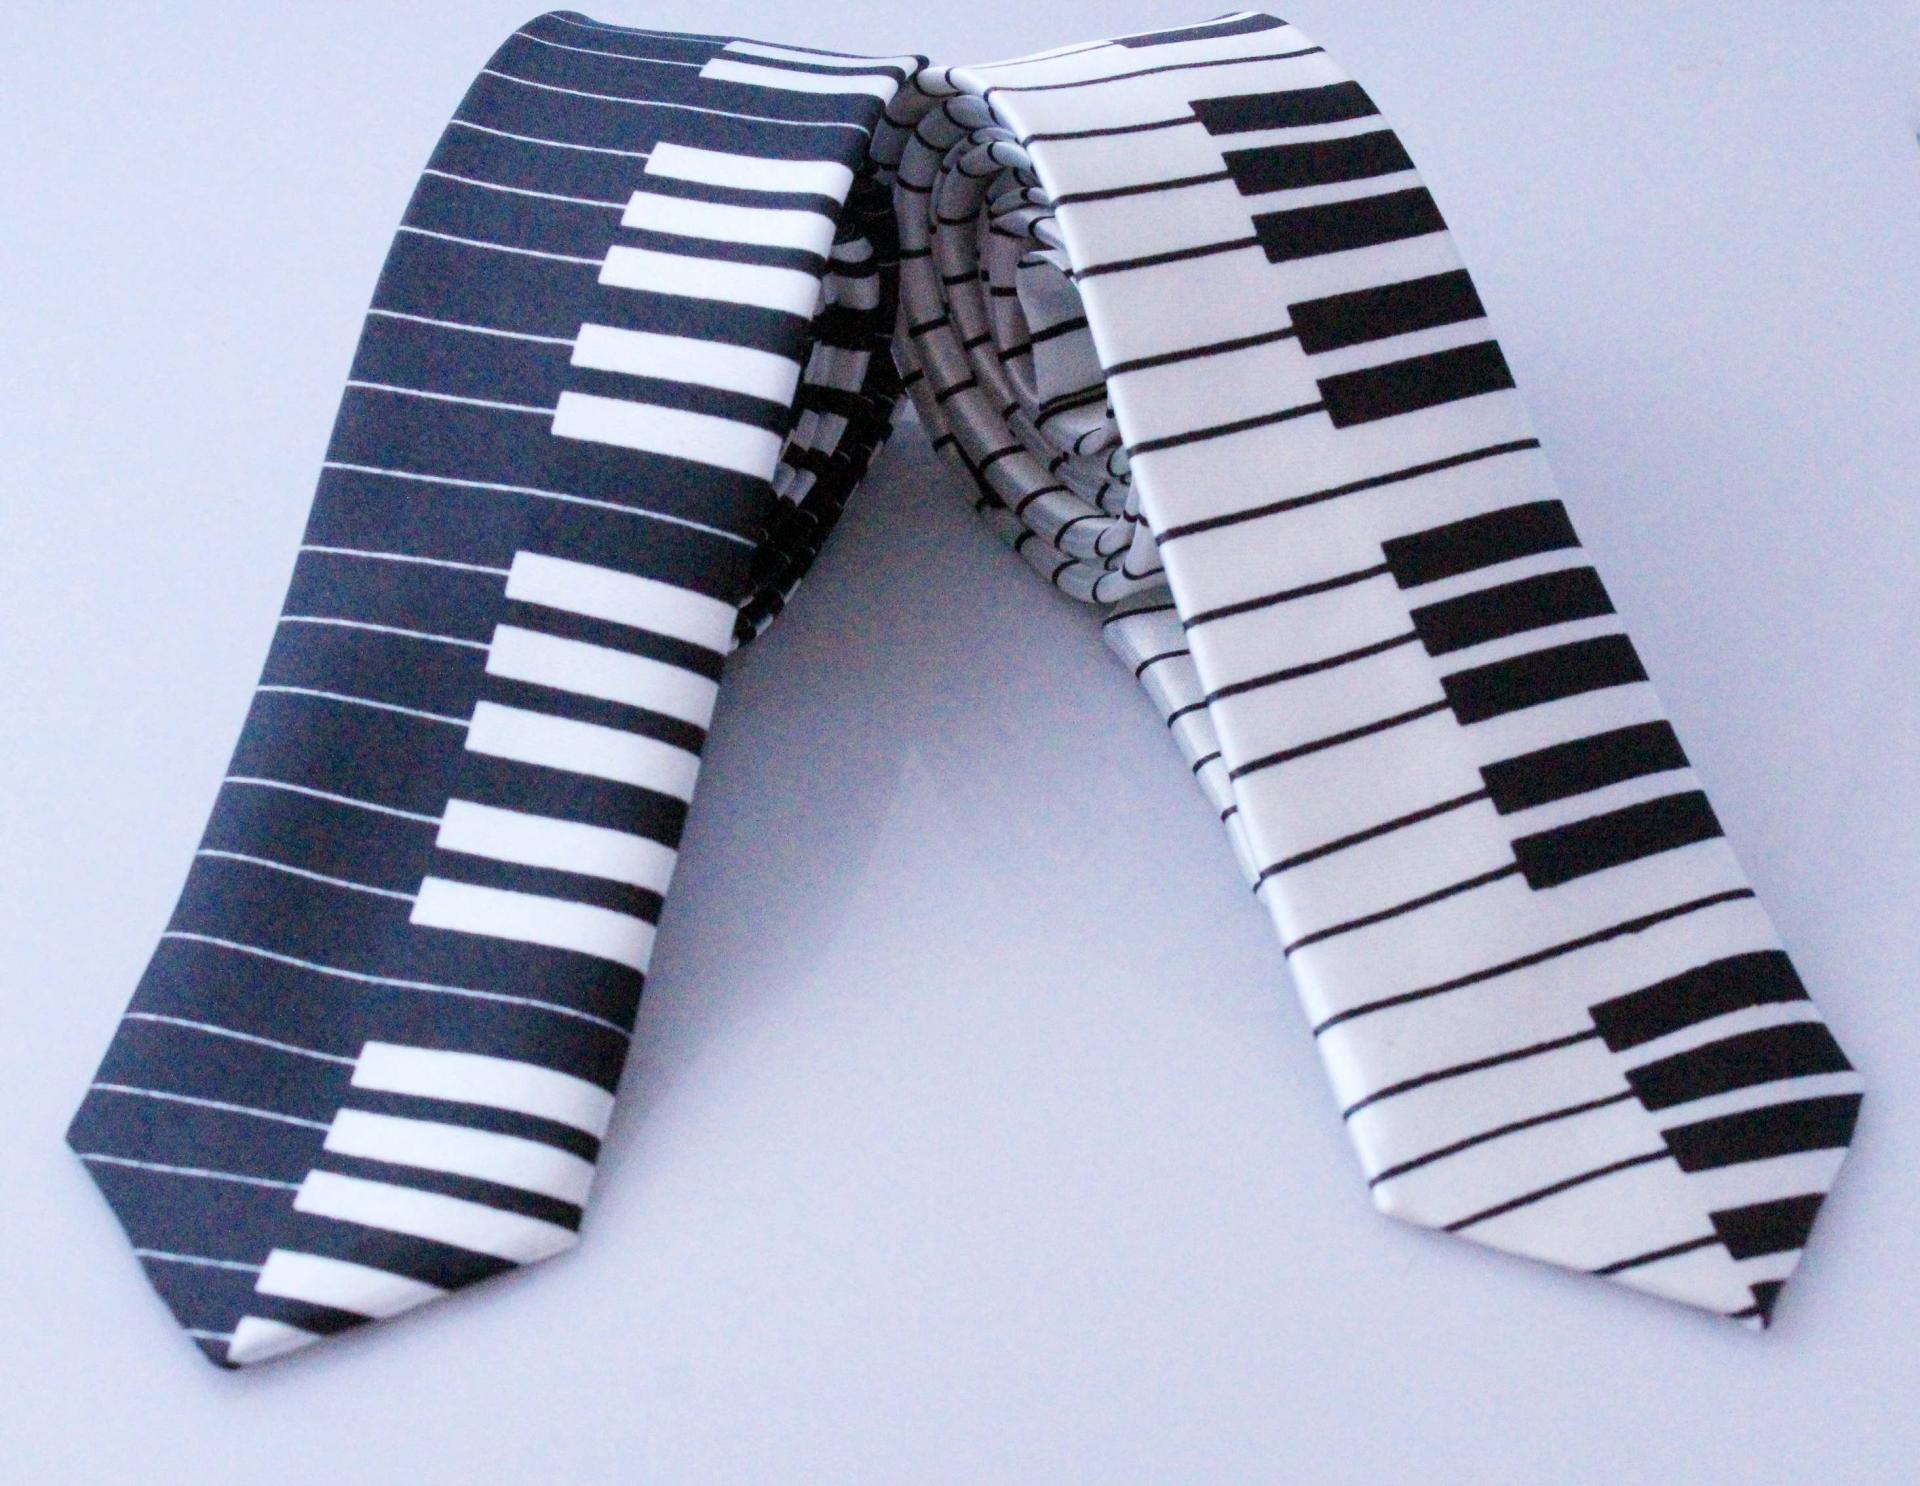 Piano Notes Tie - 2 Designs